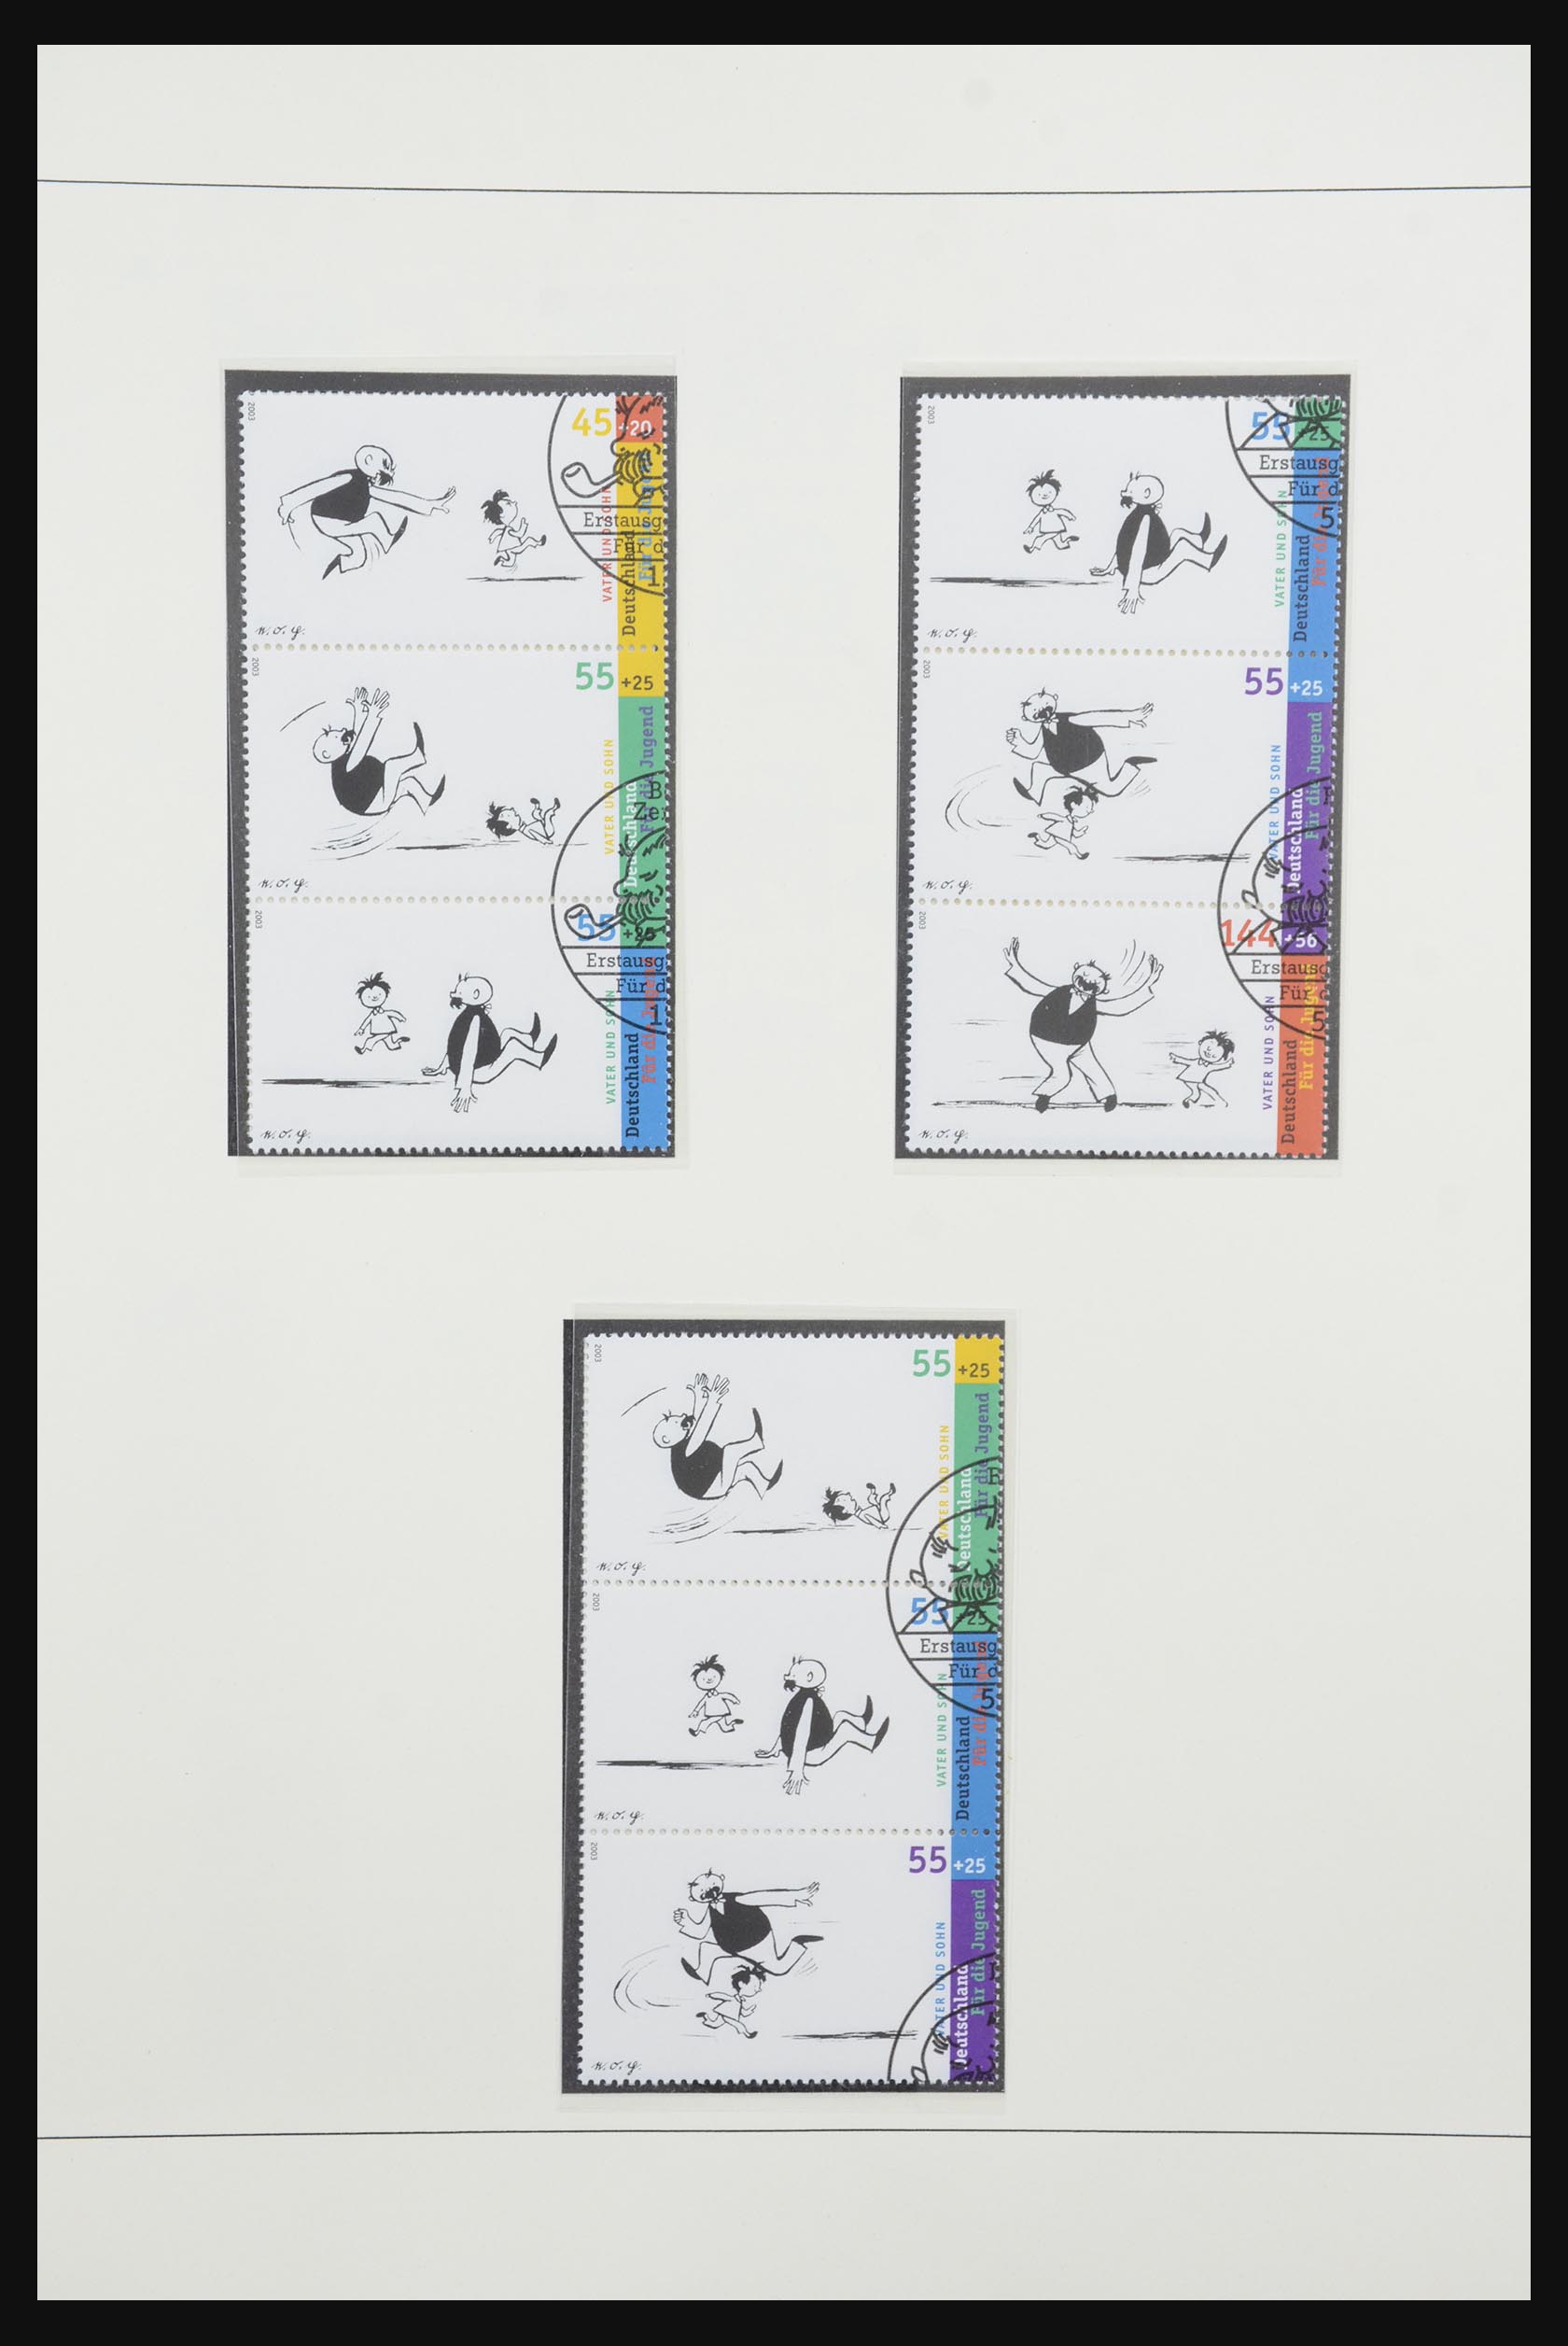 31842 085 - 31842 Bundespost combinaties 1951-2003.